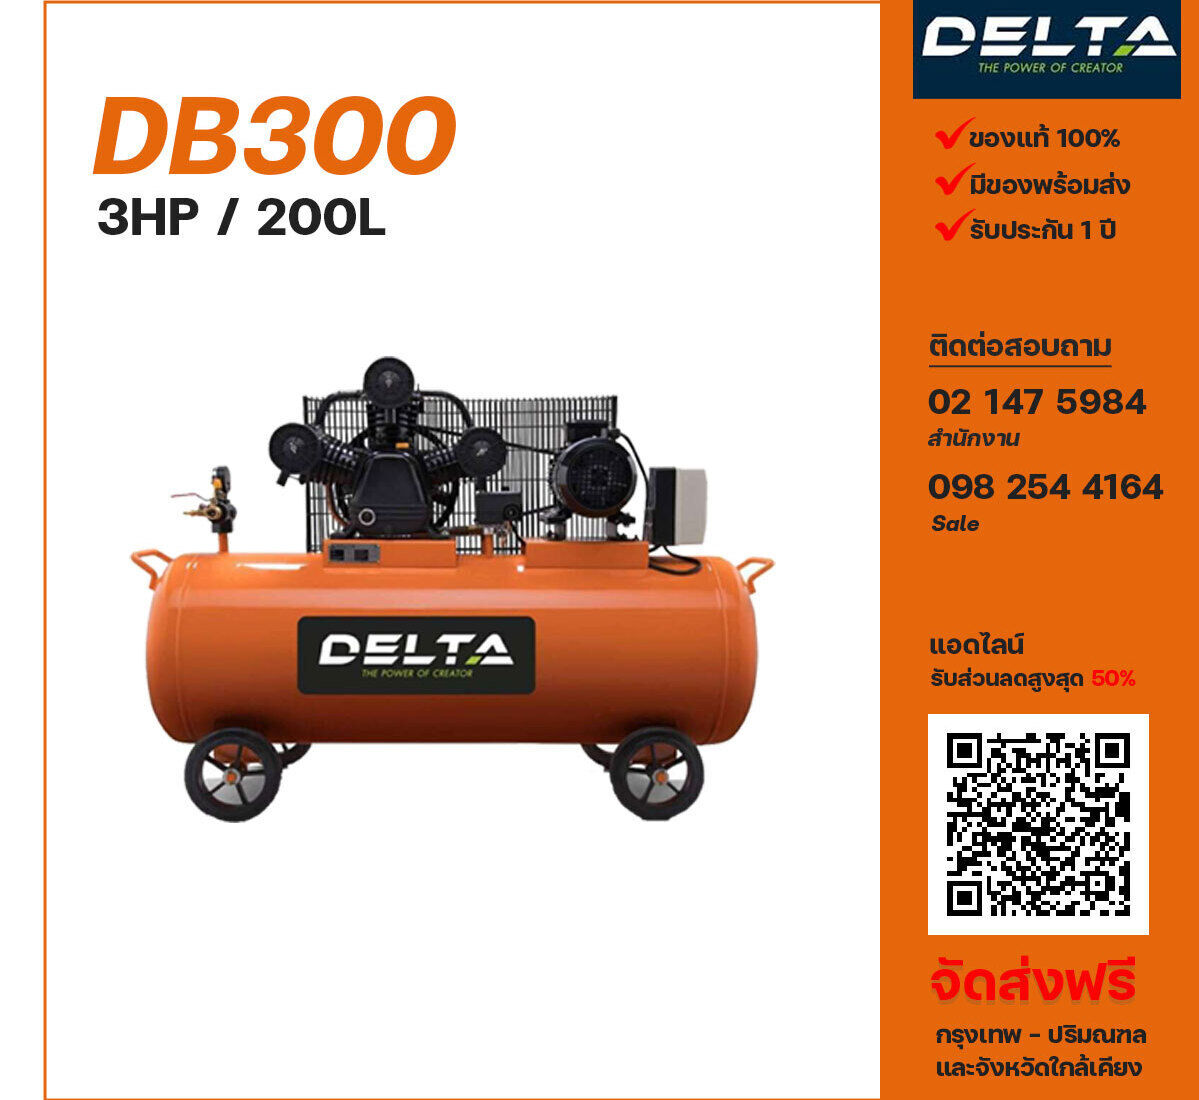 ปั๊มลมเดลต้า DELTA DB300 220V ปั๊มลมลูกสูบ ขนาด 3 สูบ 3 แรงม้า 200 ลิตร DELTA พร้อมมอเตอร์ ไฟ 220V ส่งฟรี กรุงเทพฯ-ปริมณฑล รับประกัน 1 ปี